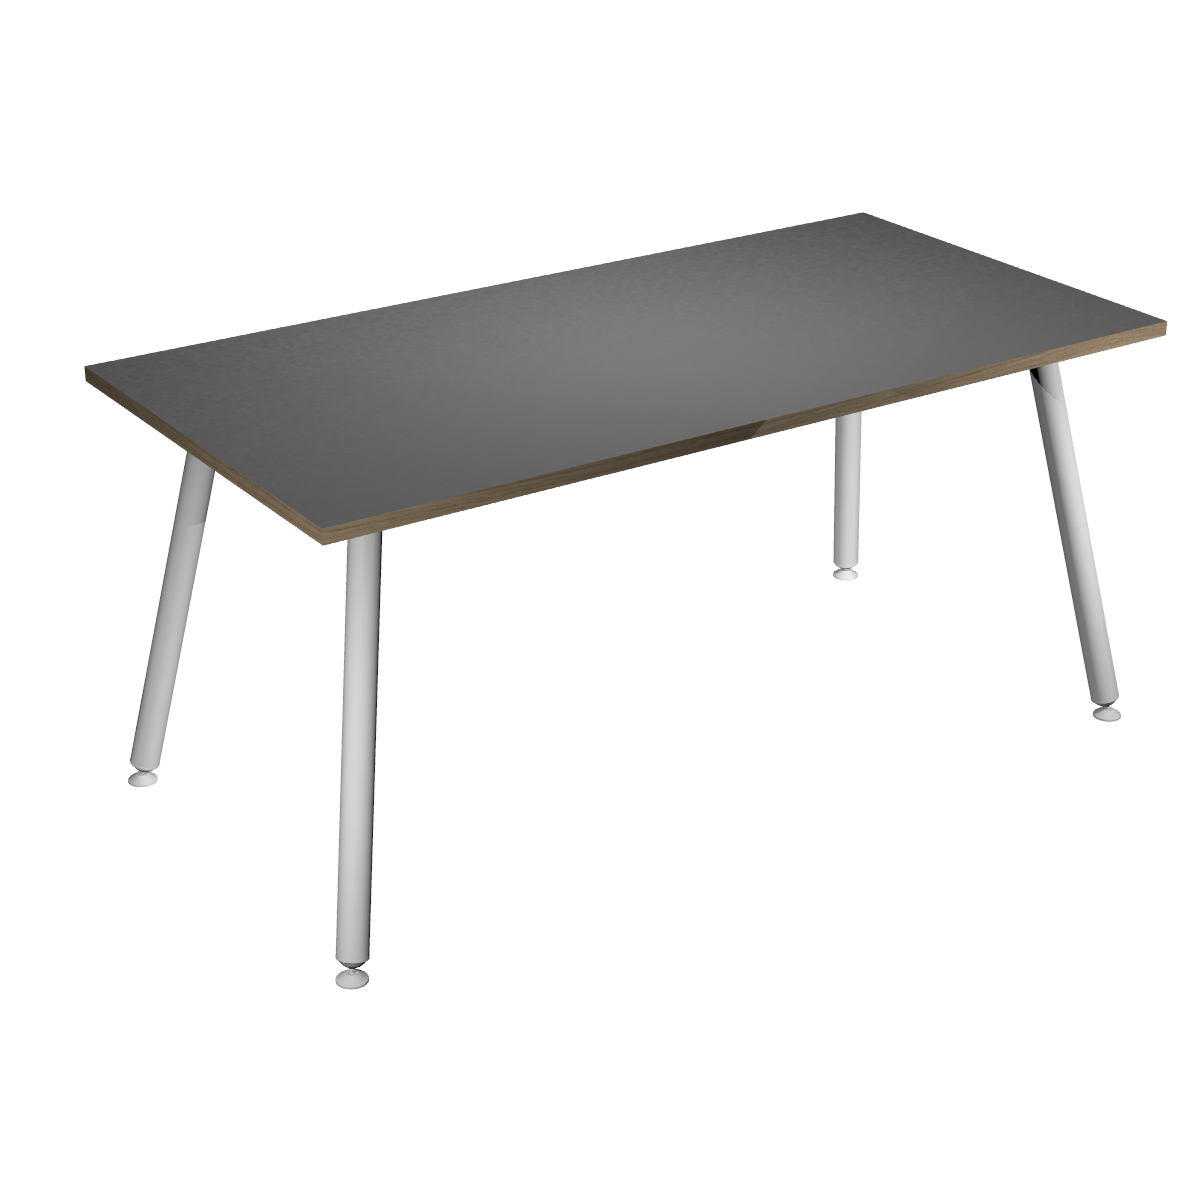 Table haute LEONARDO - 160 x 80 x 105 cm - Pieds métal blancs - Anthracite chants chêne